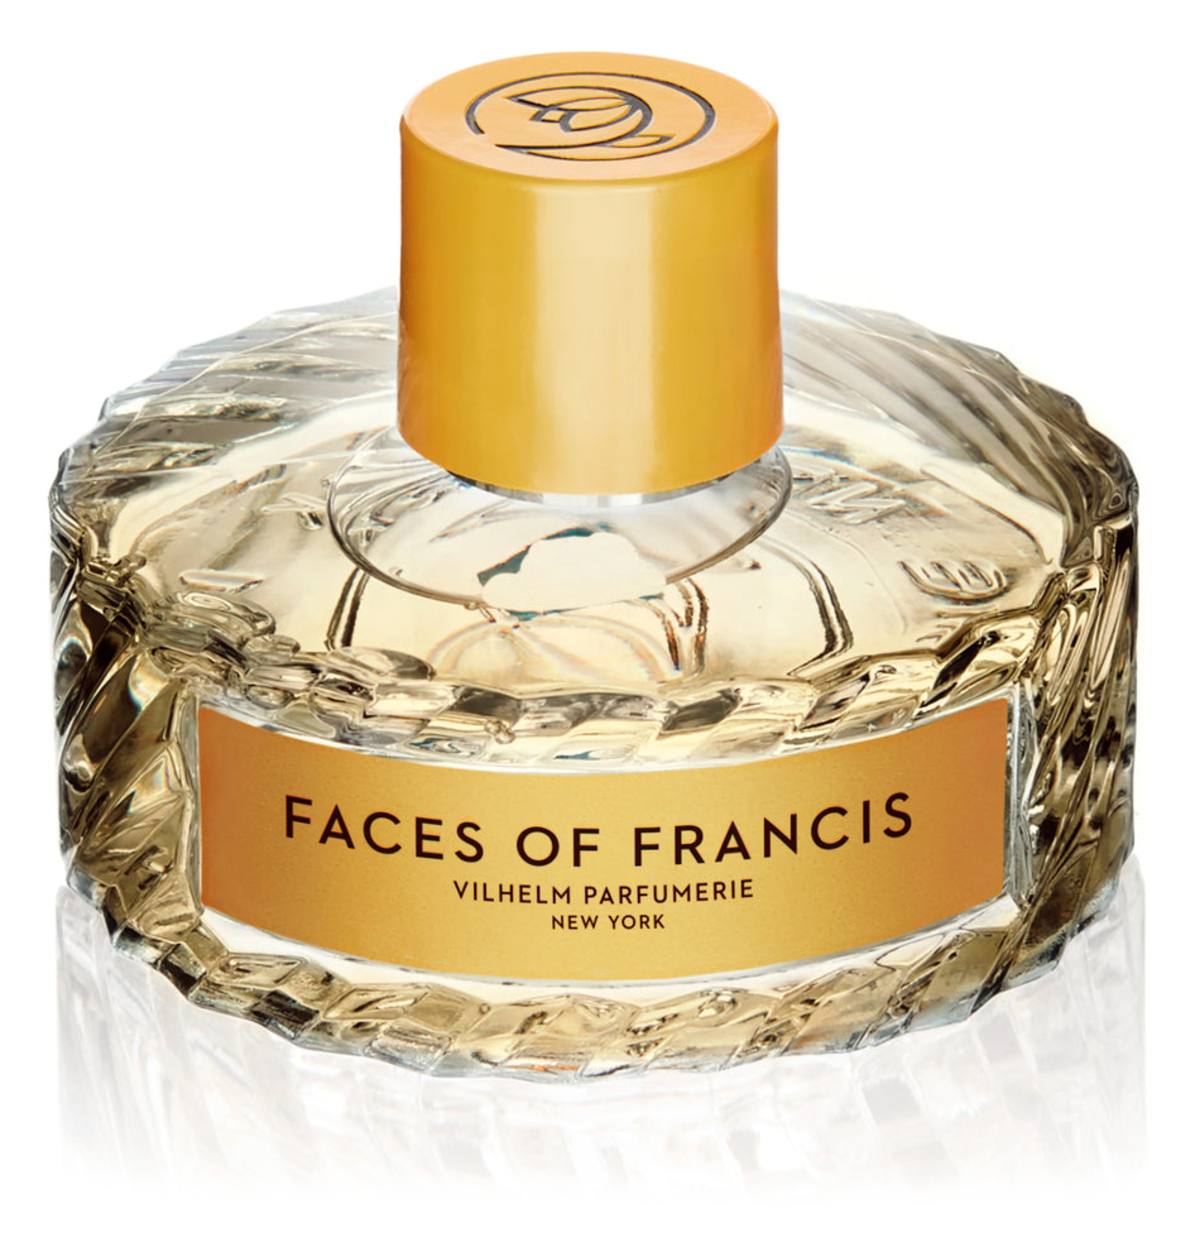 Faces of Francis - Vilhelm Parfumerie